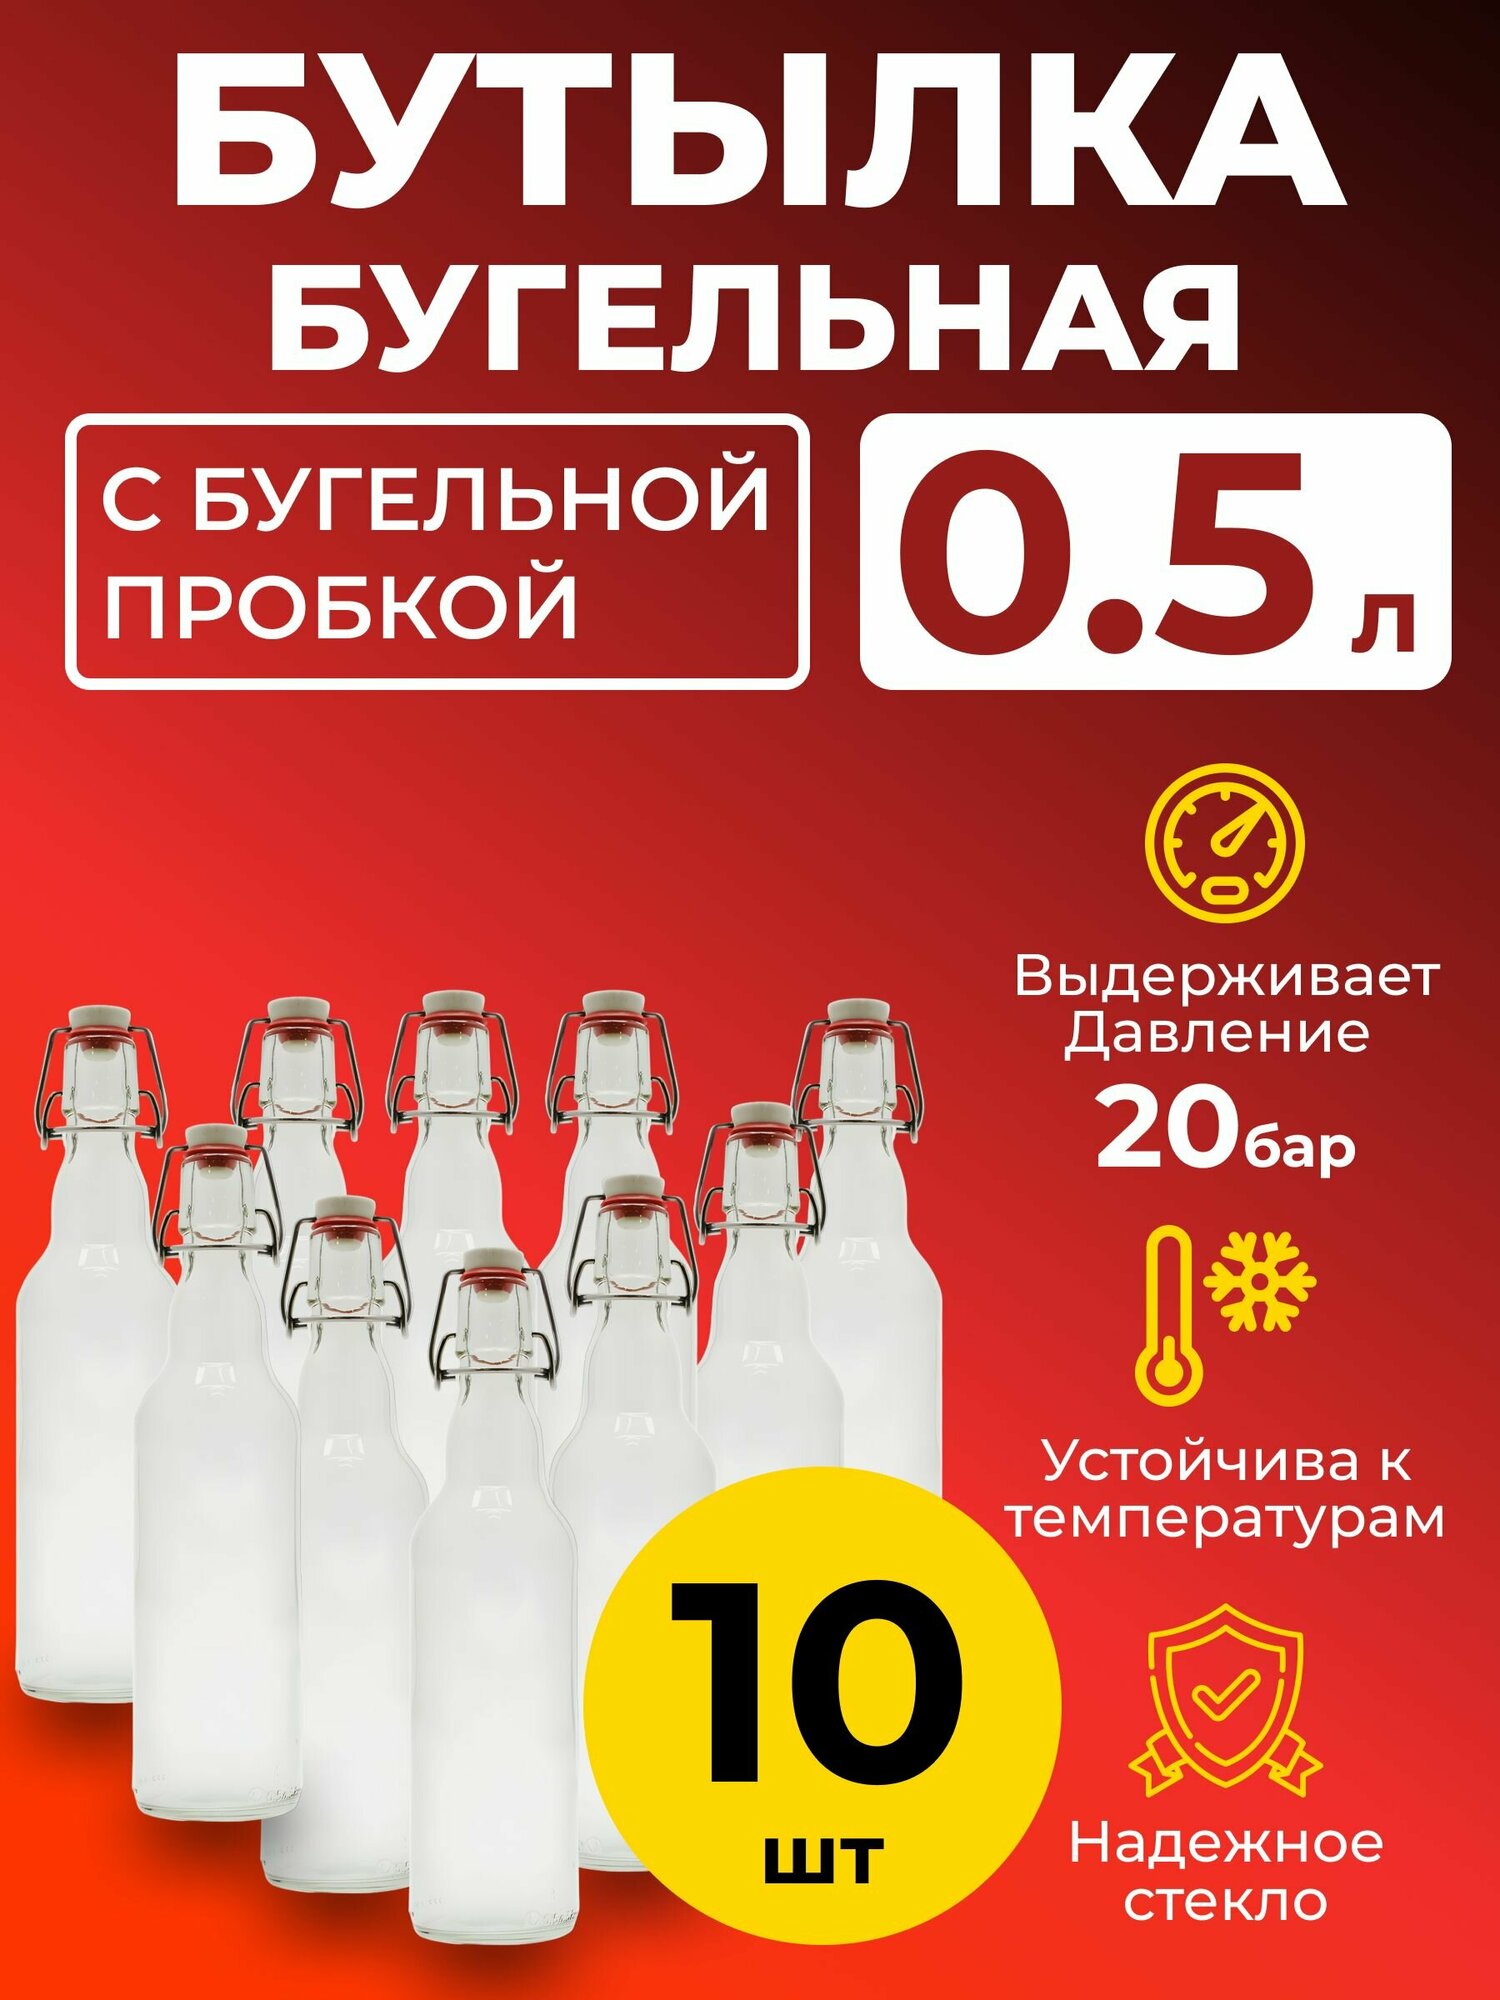 Бутылка бугельная 0,5 л. с бугельной пробкой (светлая), 10 шт.